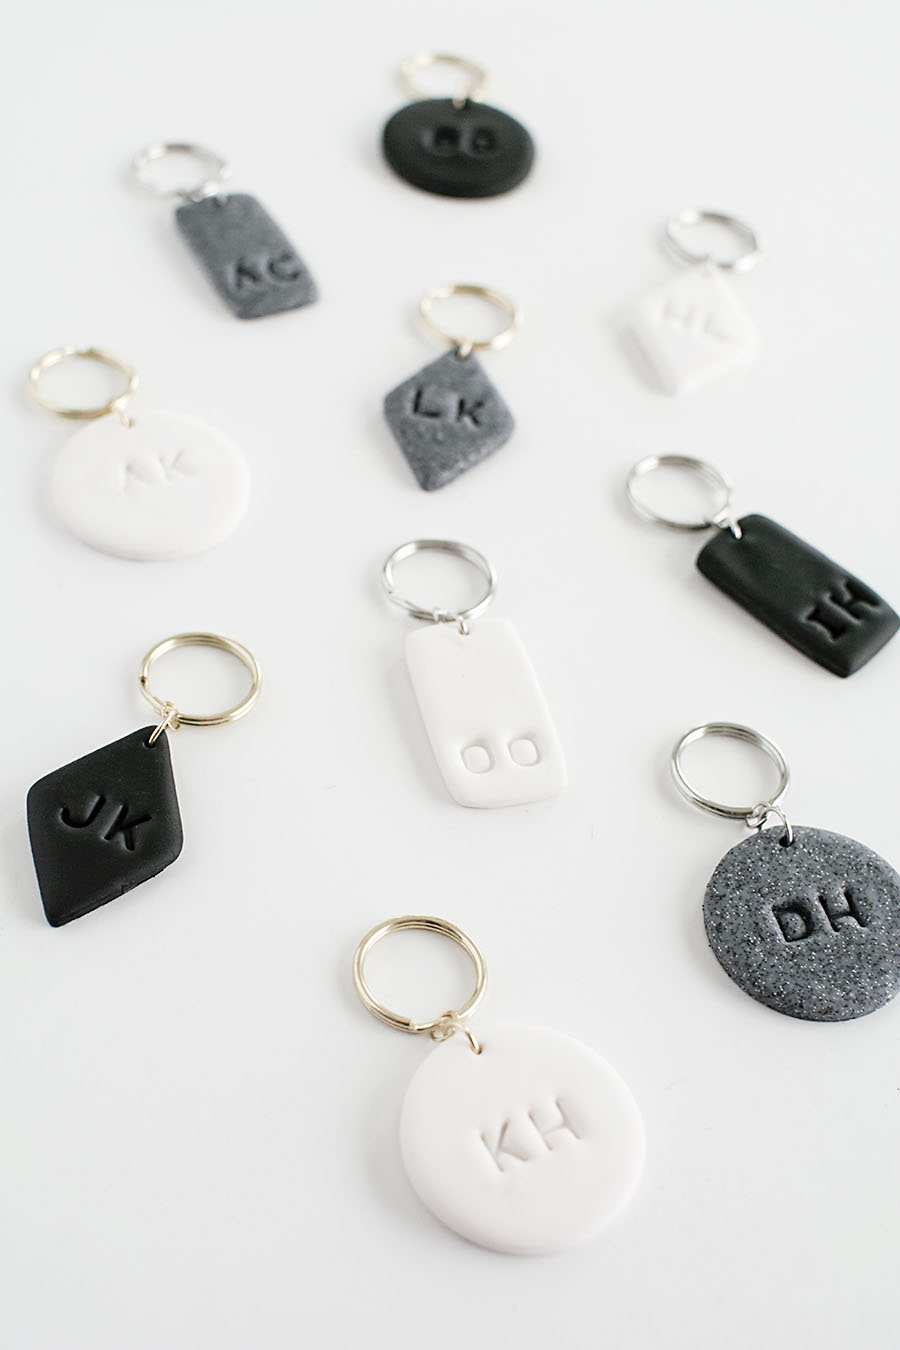 Monogram Clay Keychains DIY